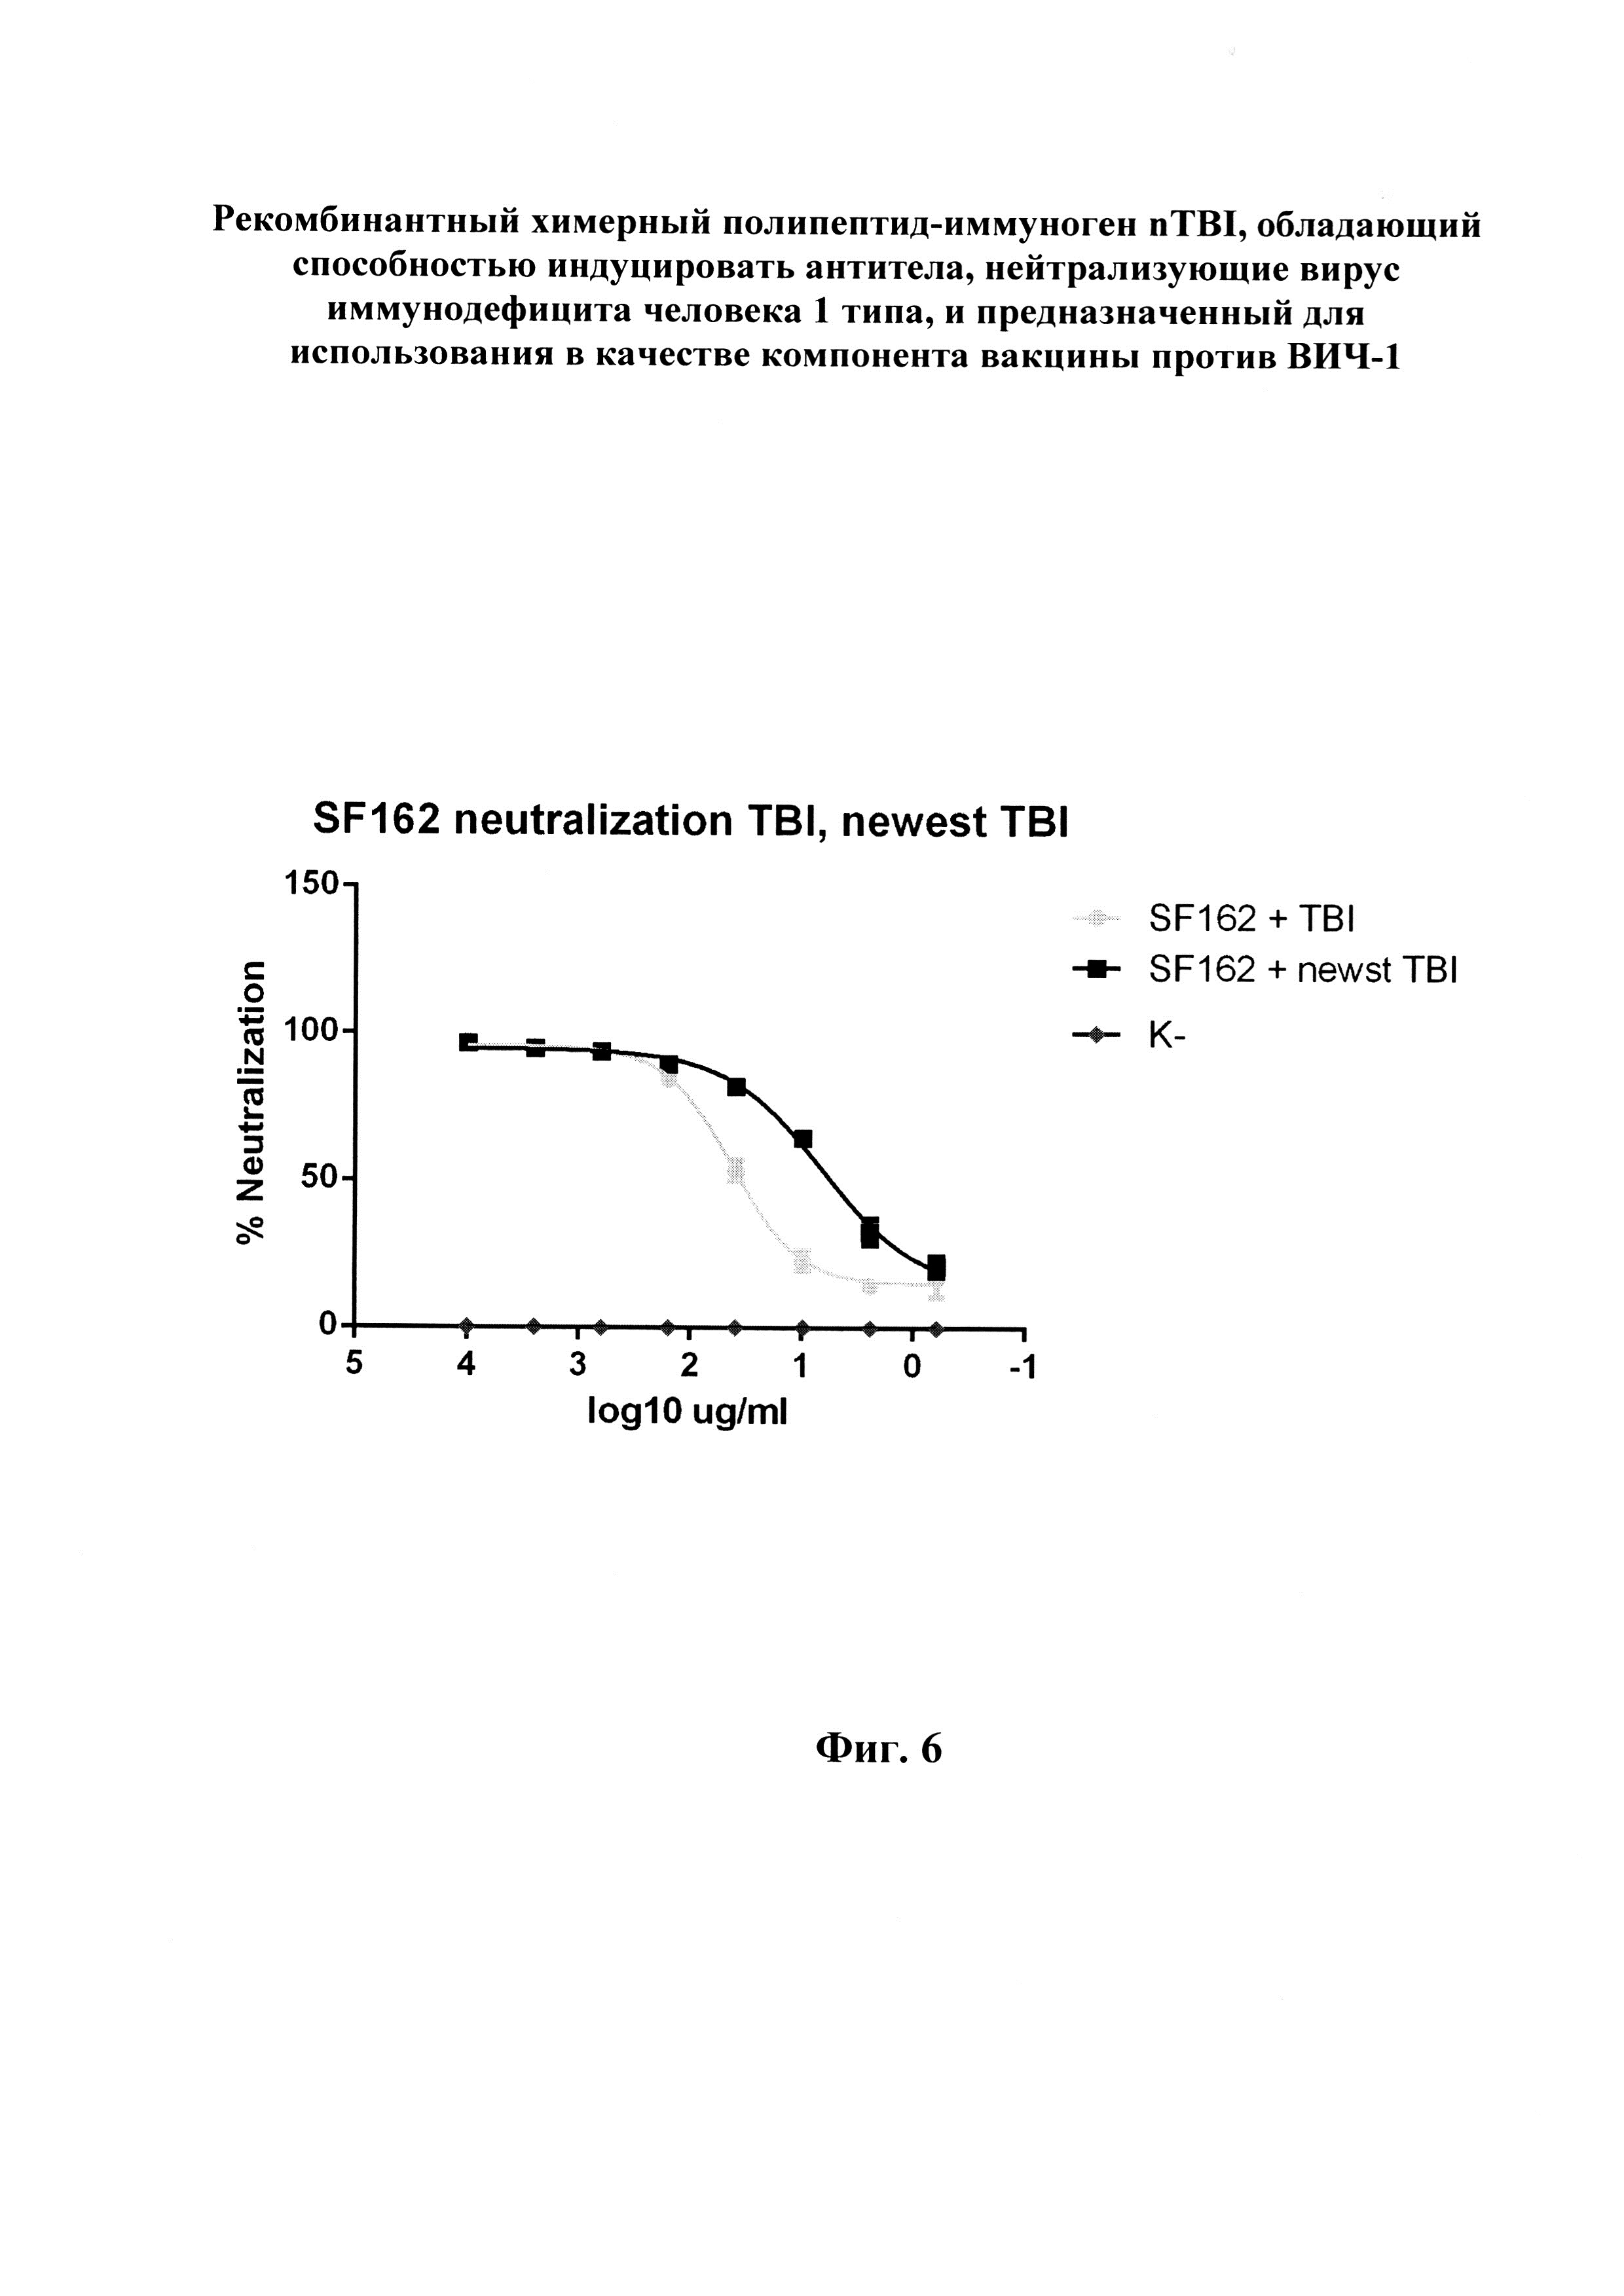 Рекомбинантный химерный полипептид-иммуноген nTBI, обладающий способностью индуцировать антитела, нейтрализующие вирус иммунодефицита человека 1 типа, и предназначенный для использования в качестве компонента вакцины против ВИЧ-1